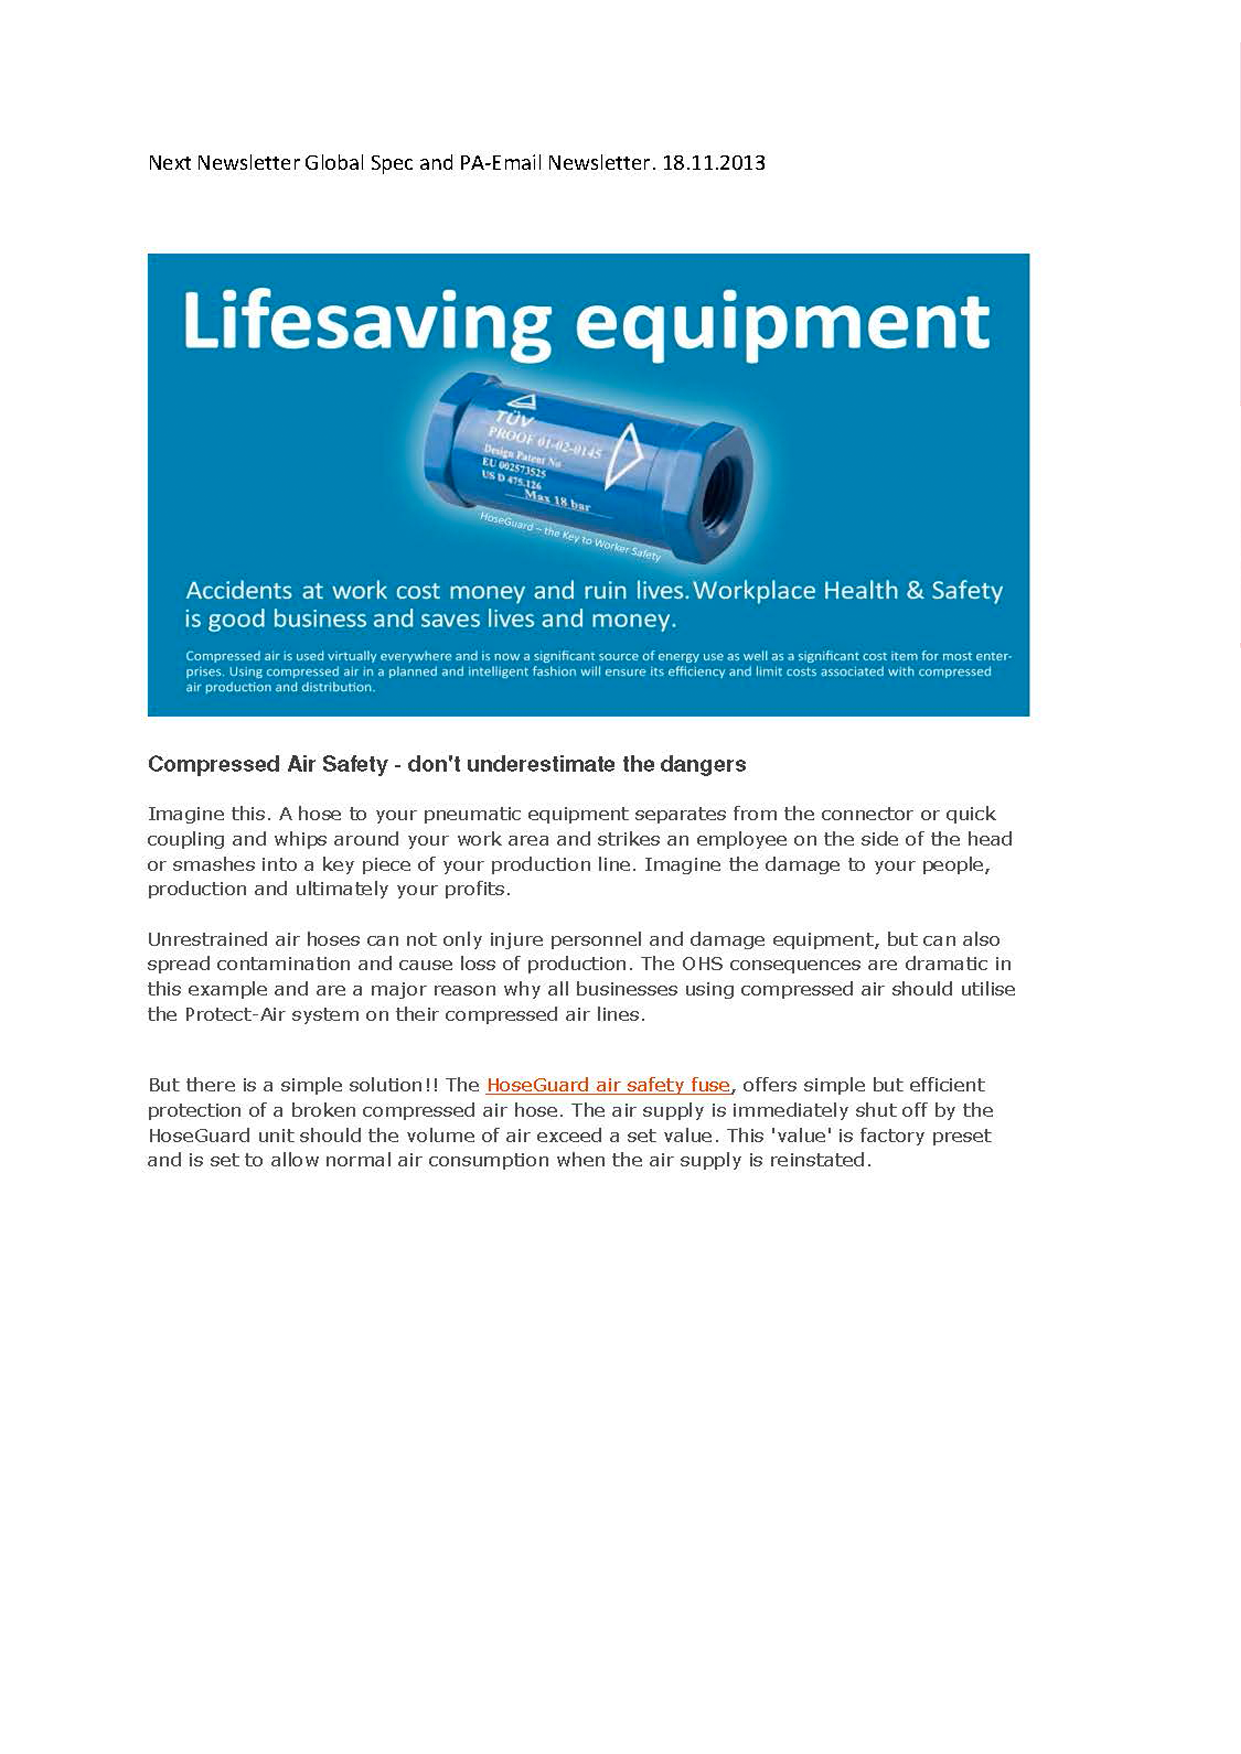 Lifesaving Equipment